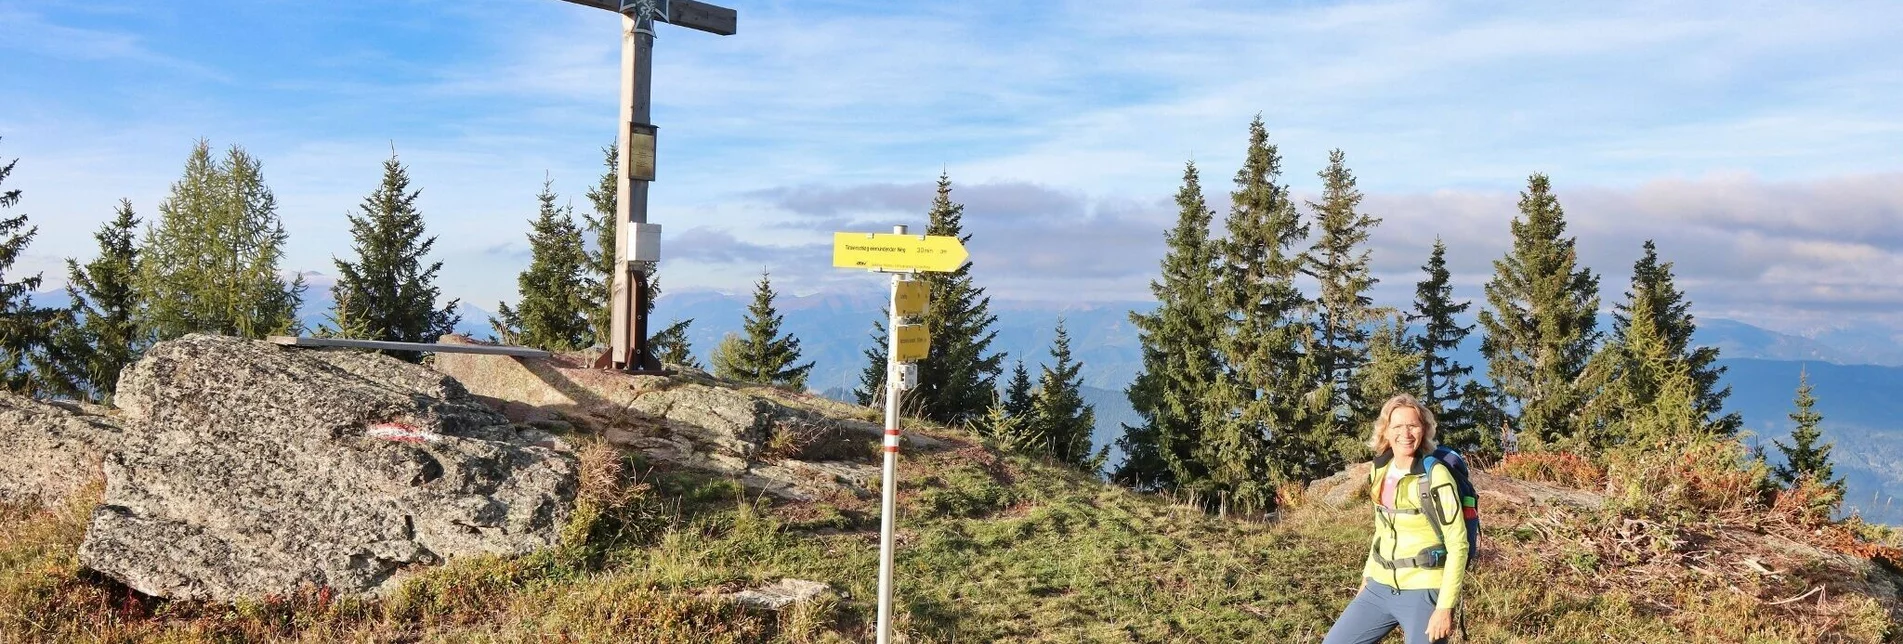 Hiking route Weißeck starting in St. Georgen ob Judenburg - Touren-Impression #1 | © Weges OG